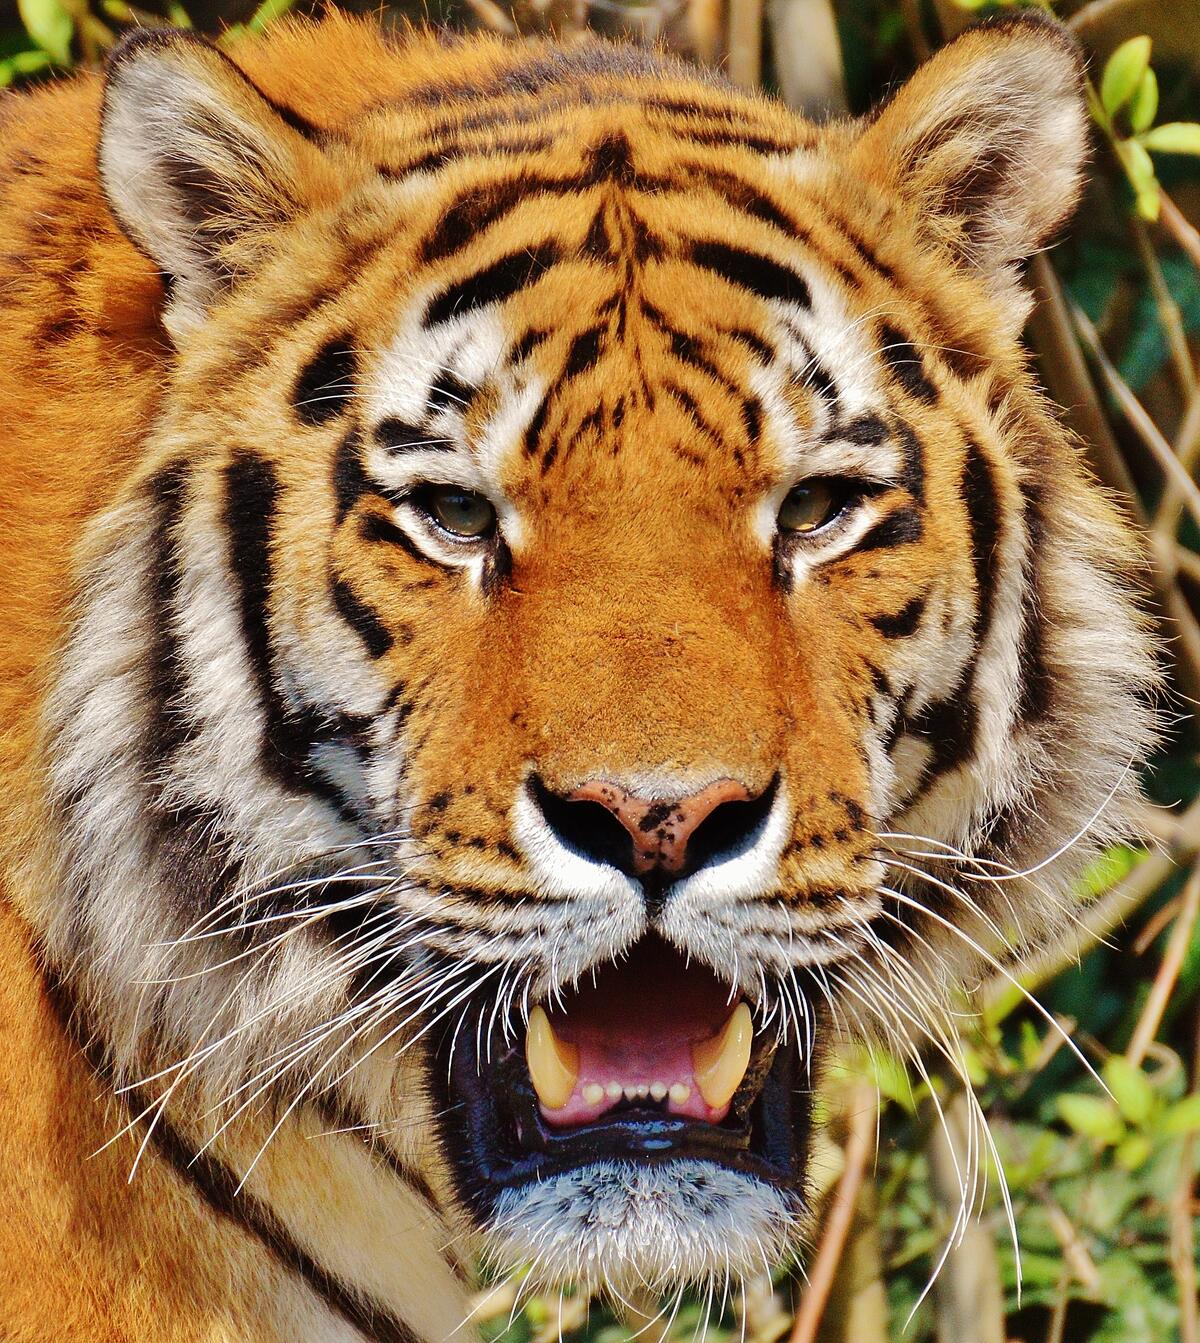 Big tiger face